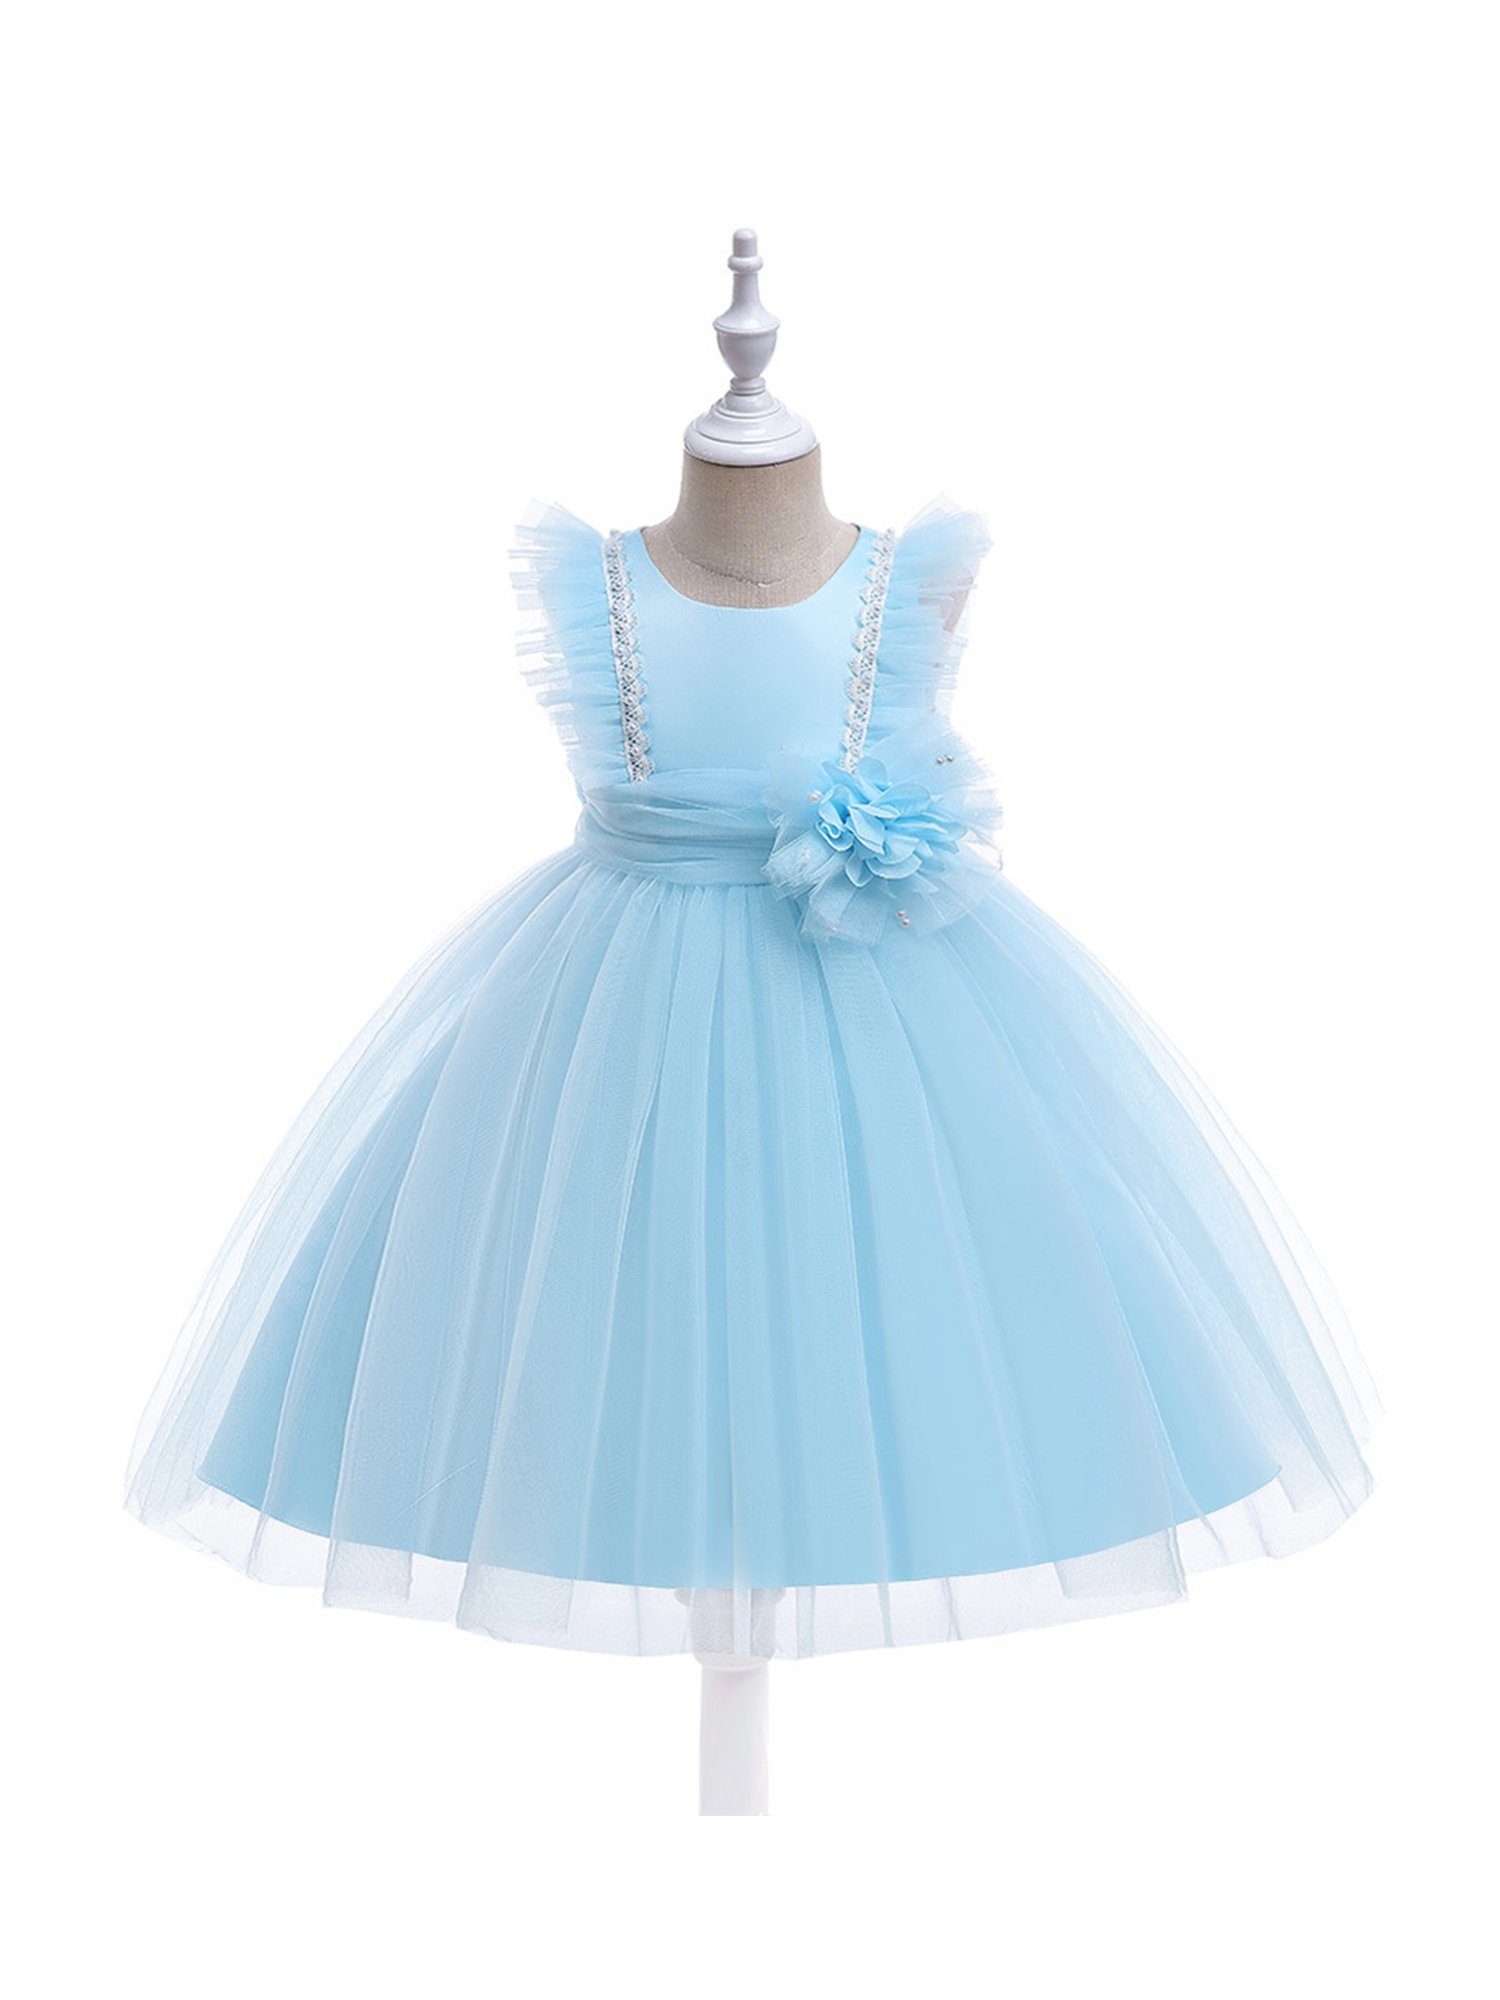 LAPA Abendkleid Mädchen Partykleid, Blumenmädchen-Hochzeitskleid, A-Linie Tüllkleid mit Spitze und Perlen Blau